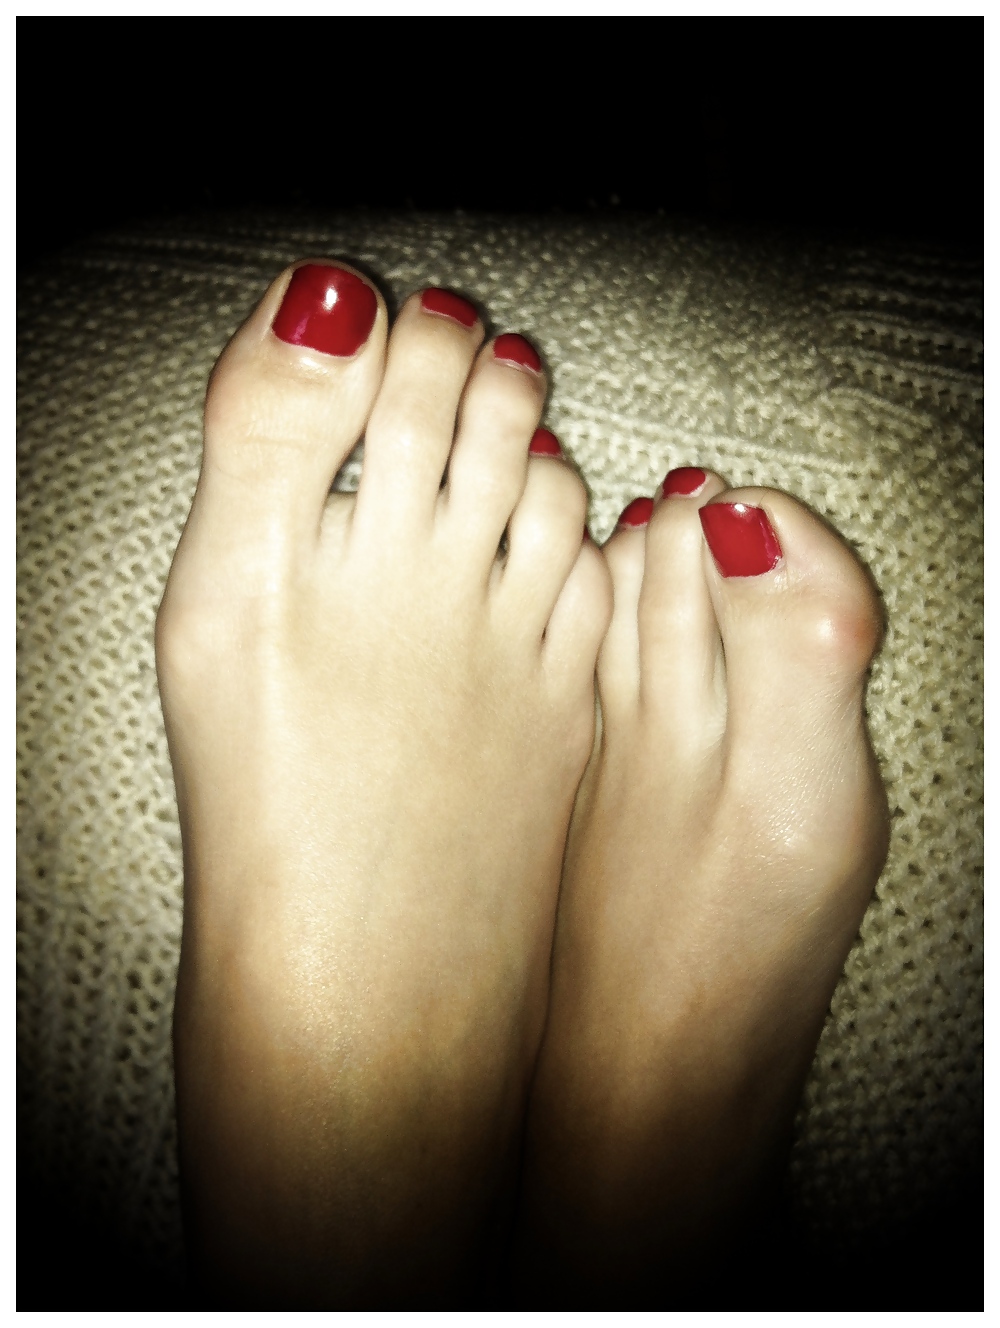 Los hermosos pies de Jackie y sus largos dedos.
 #14852699